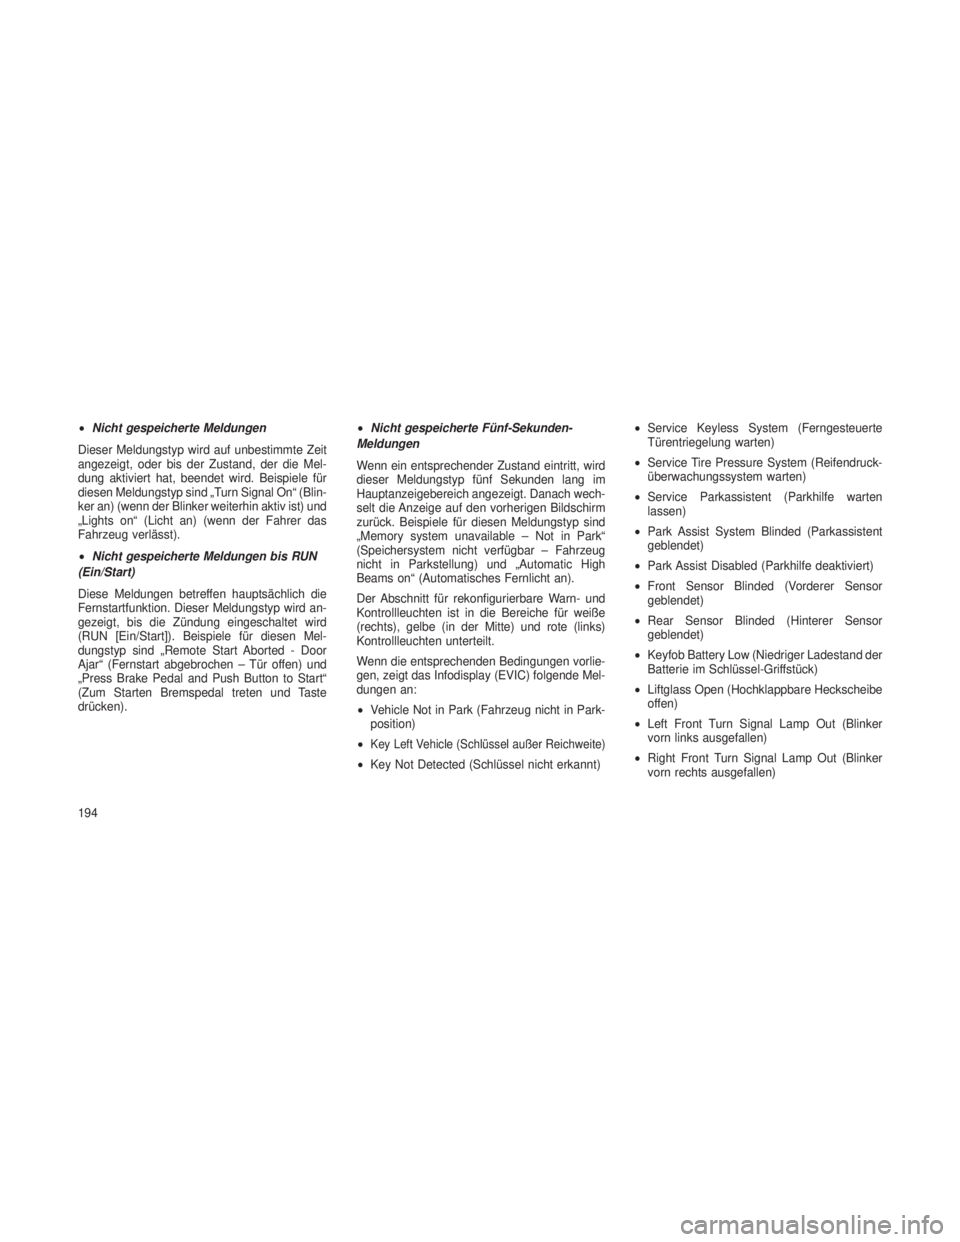 JEEP GRAND CHEROKEE 2013  Betriebsanleitung (in German) •Nicht gespeicherte Meldungen
Dieser Meldungstyp wird auf unbestimmte Zeit
angezeigt, oder bis der Zustand, der die Mel-
dung aktiviert hat, beendet wird. Beispiele für
diesen Meldungstyp sind „T